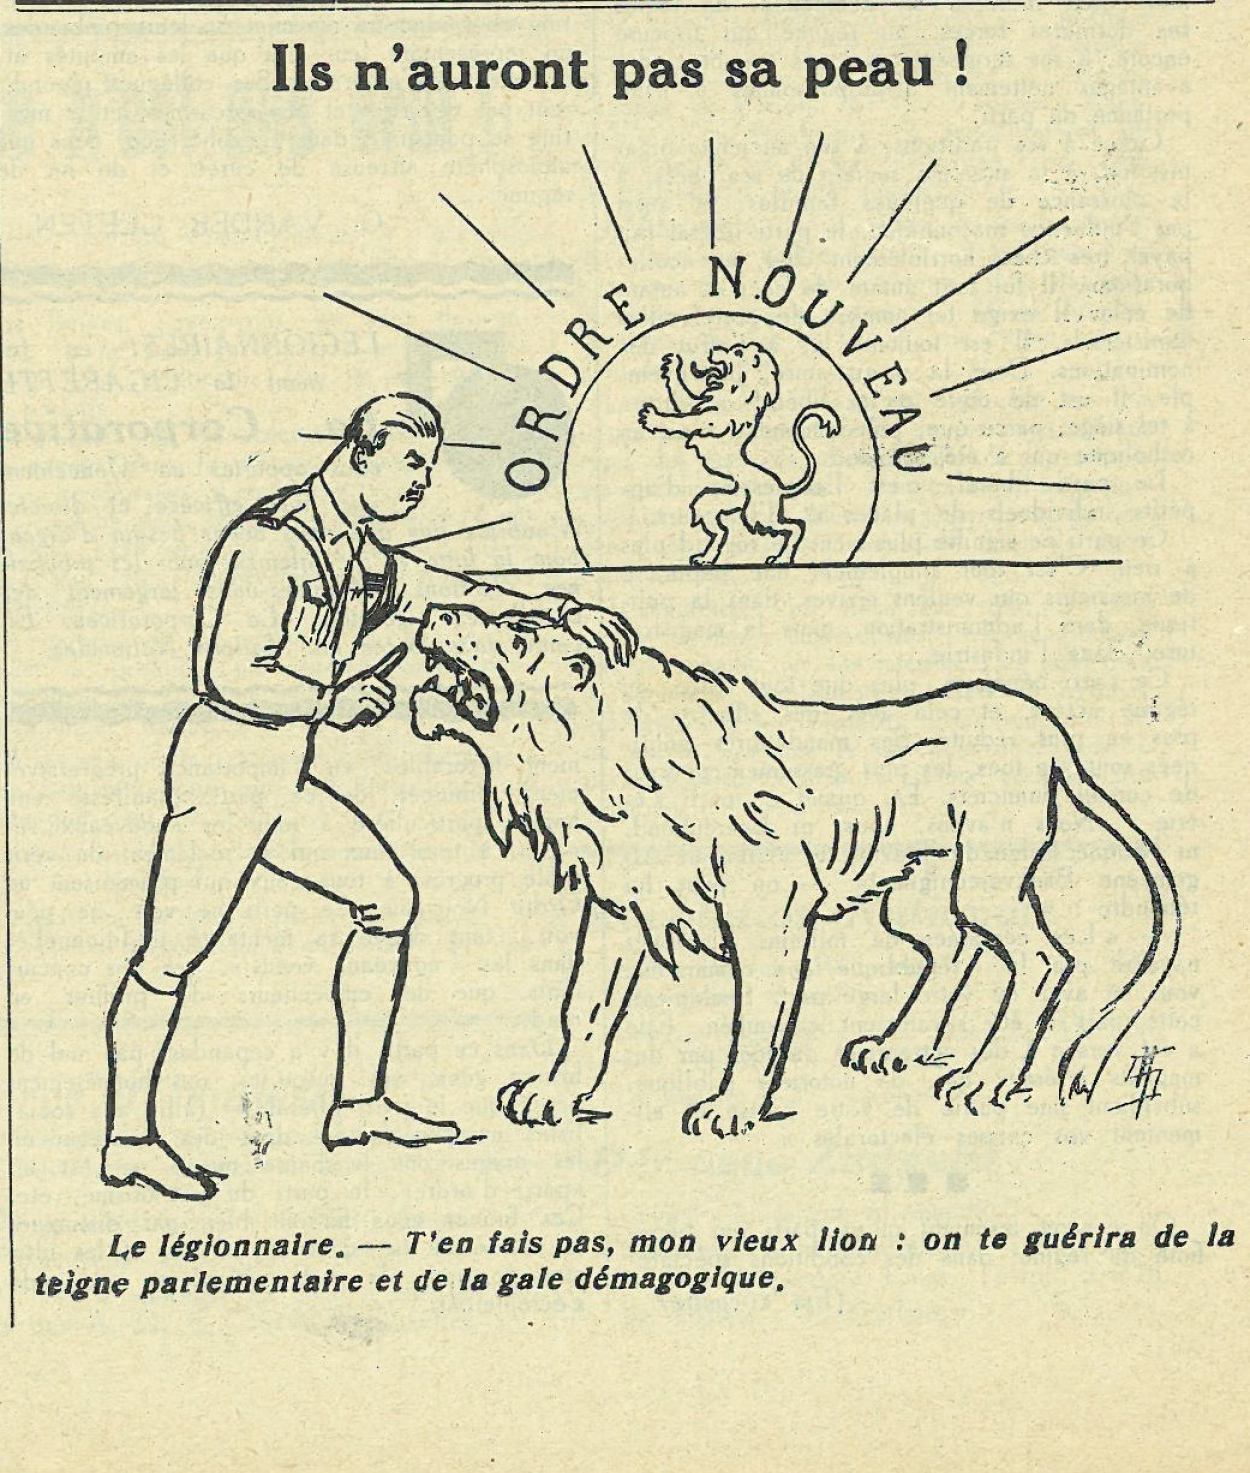 caricature-hoornaert-la-lAgion-nat-11-4-1936-p-1.jpg